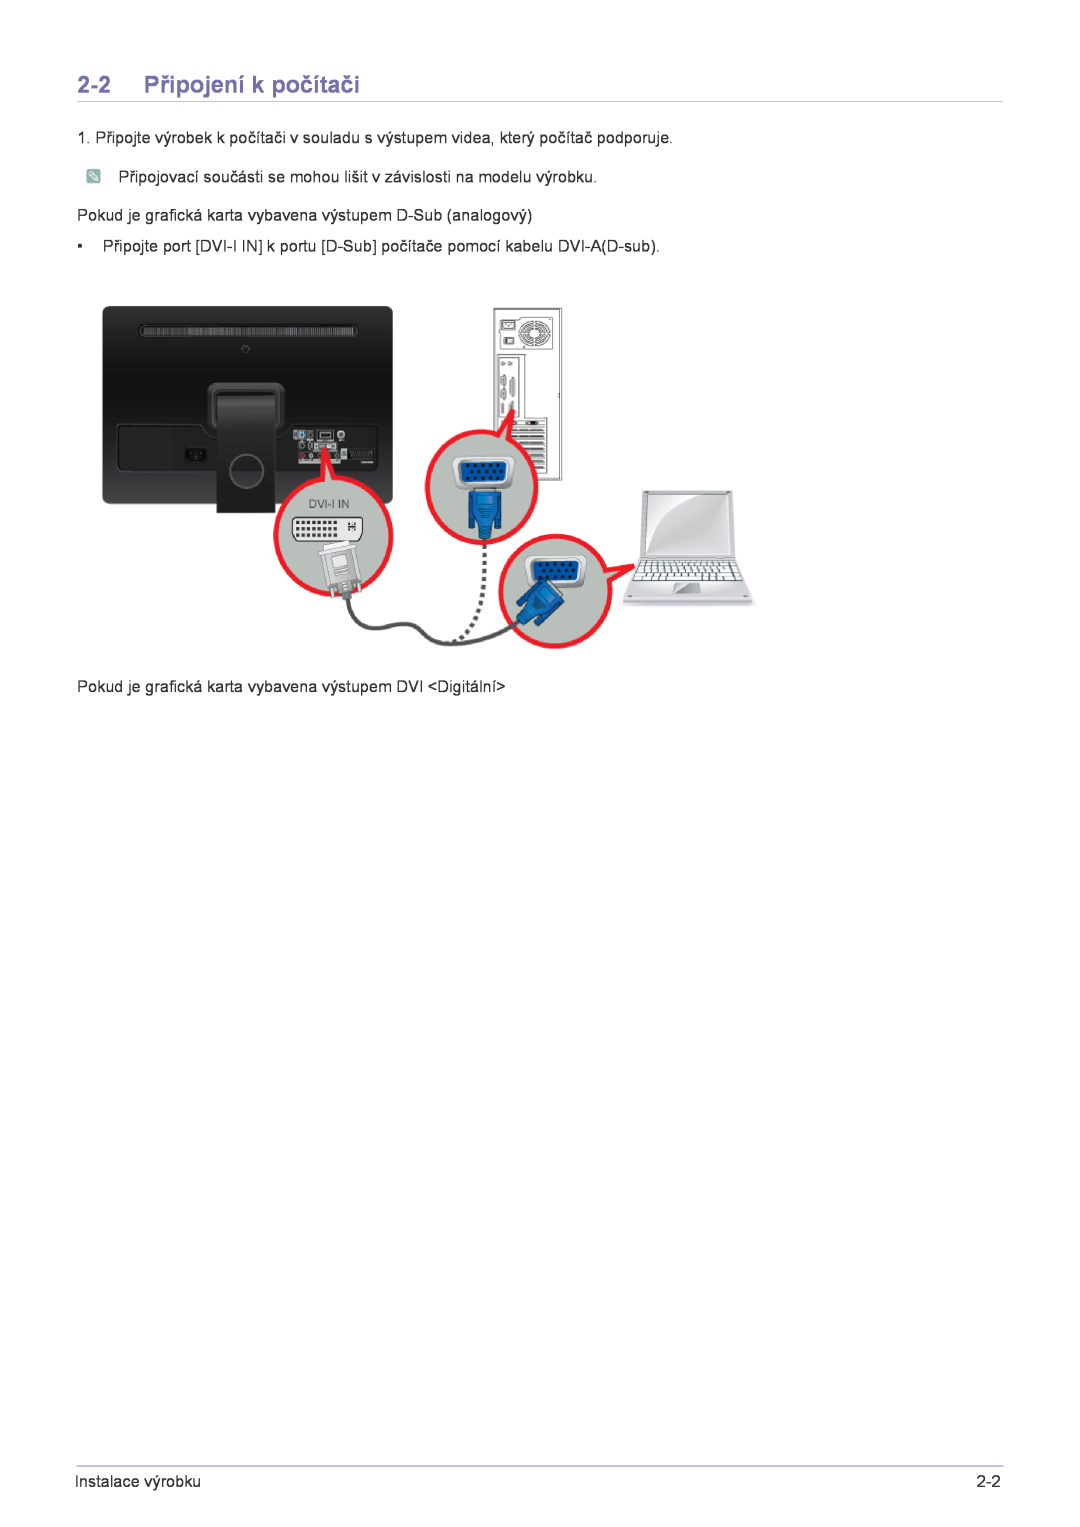 Samsung LS22FMDGF/EN manual 2-2 Připojení k počítači, Pokud je grafická karta vybavena výstupem D-Sub analogový 